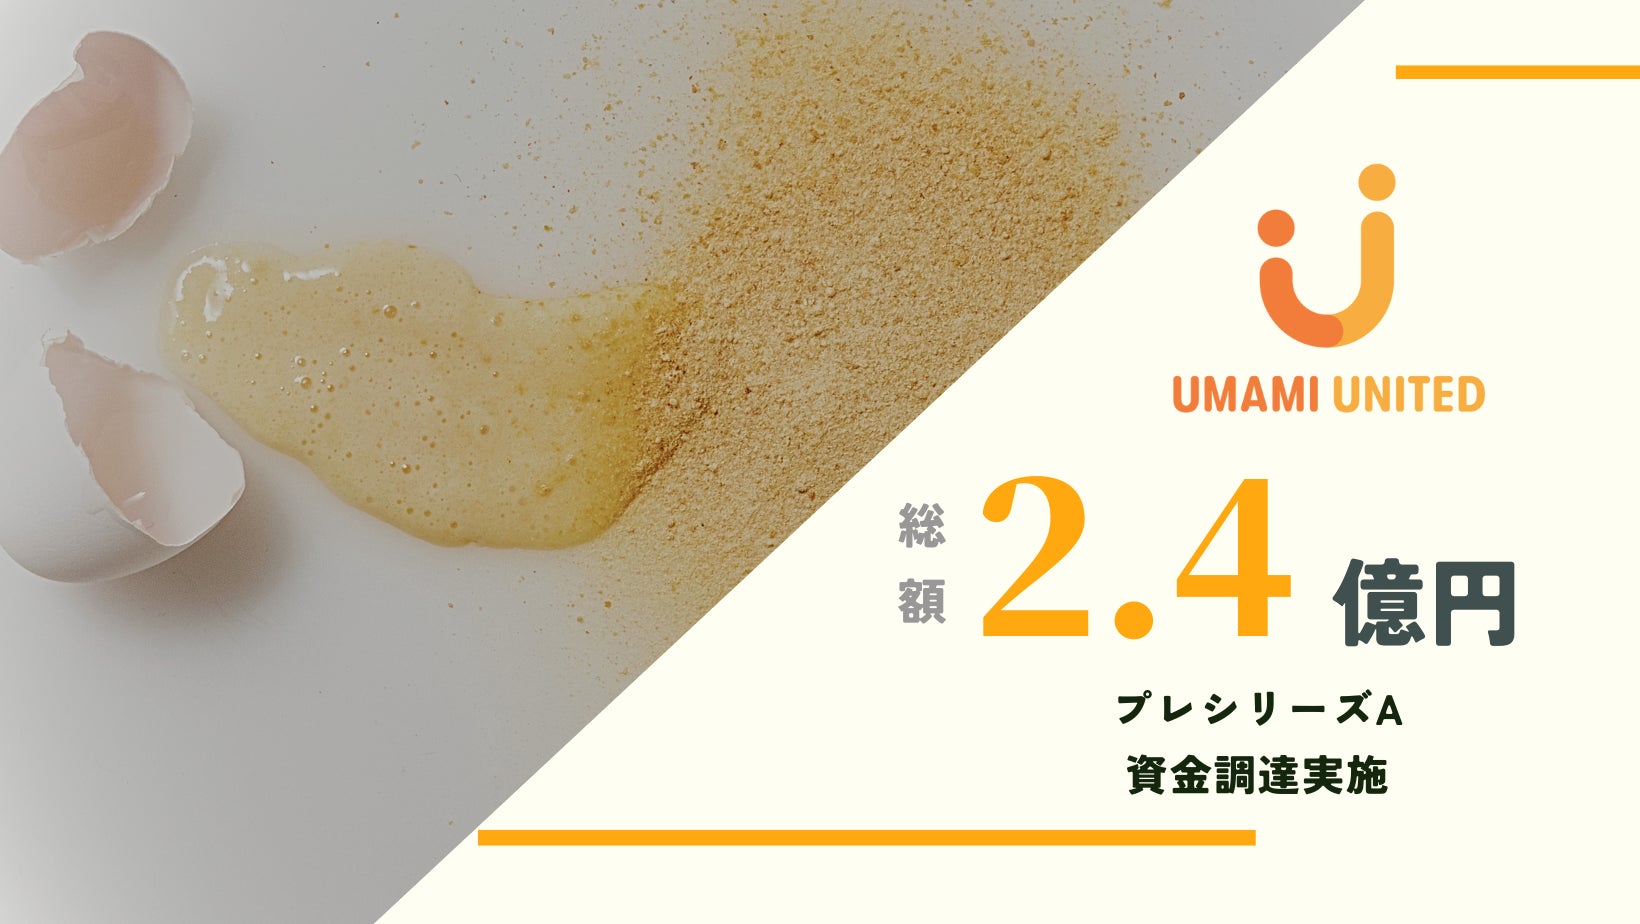 【資金調達】植物性卵「UMAMI UNITED」プレシリーズAで2.4億円 資金調達実施のサブ画像1